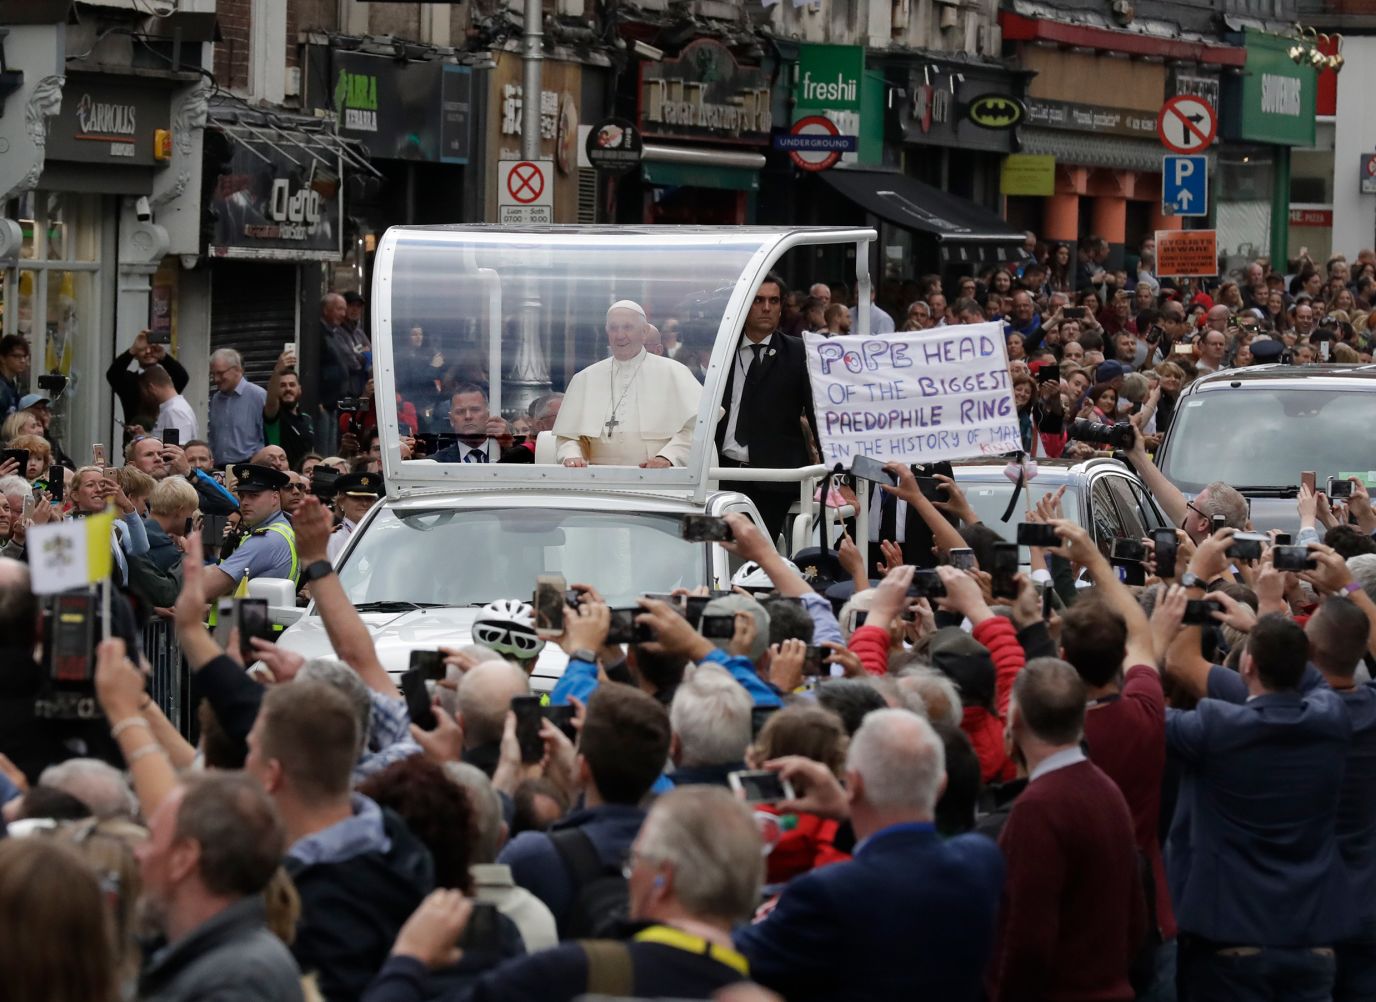 lotus flydende er nok In pictures: Pope Francis visits Ireland | CNN